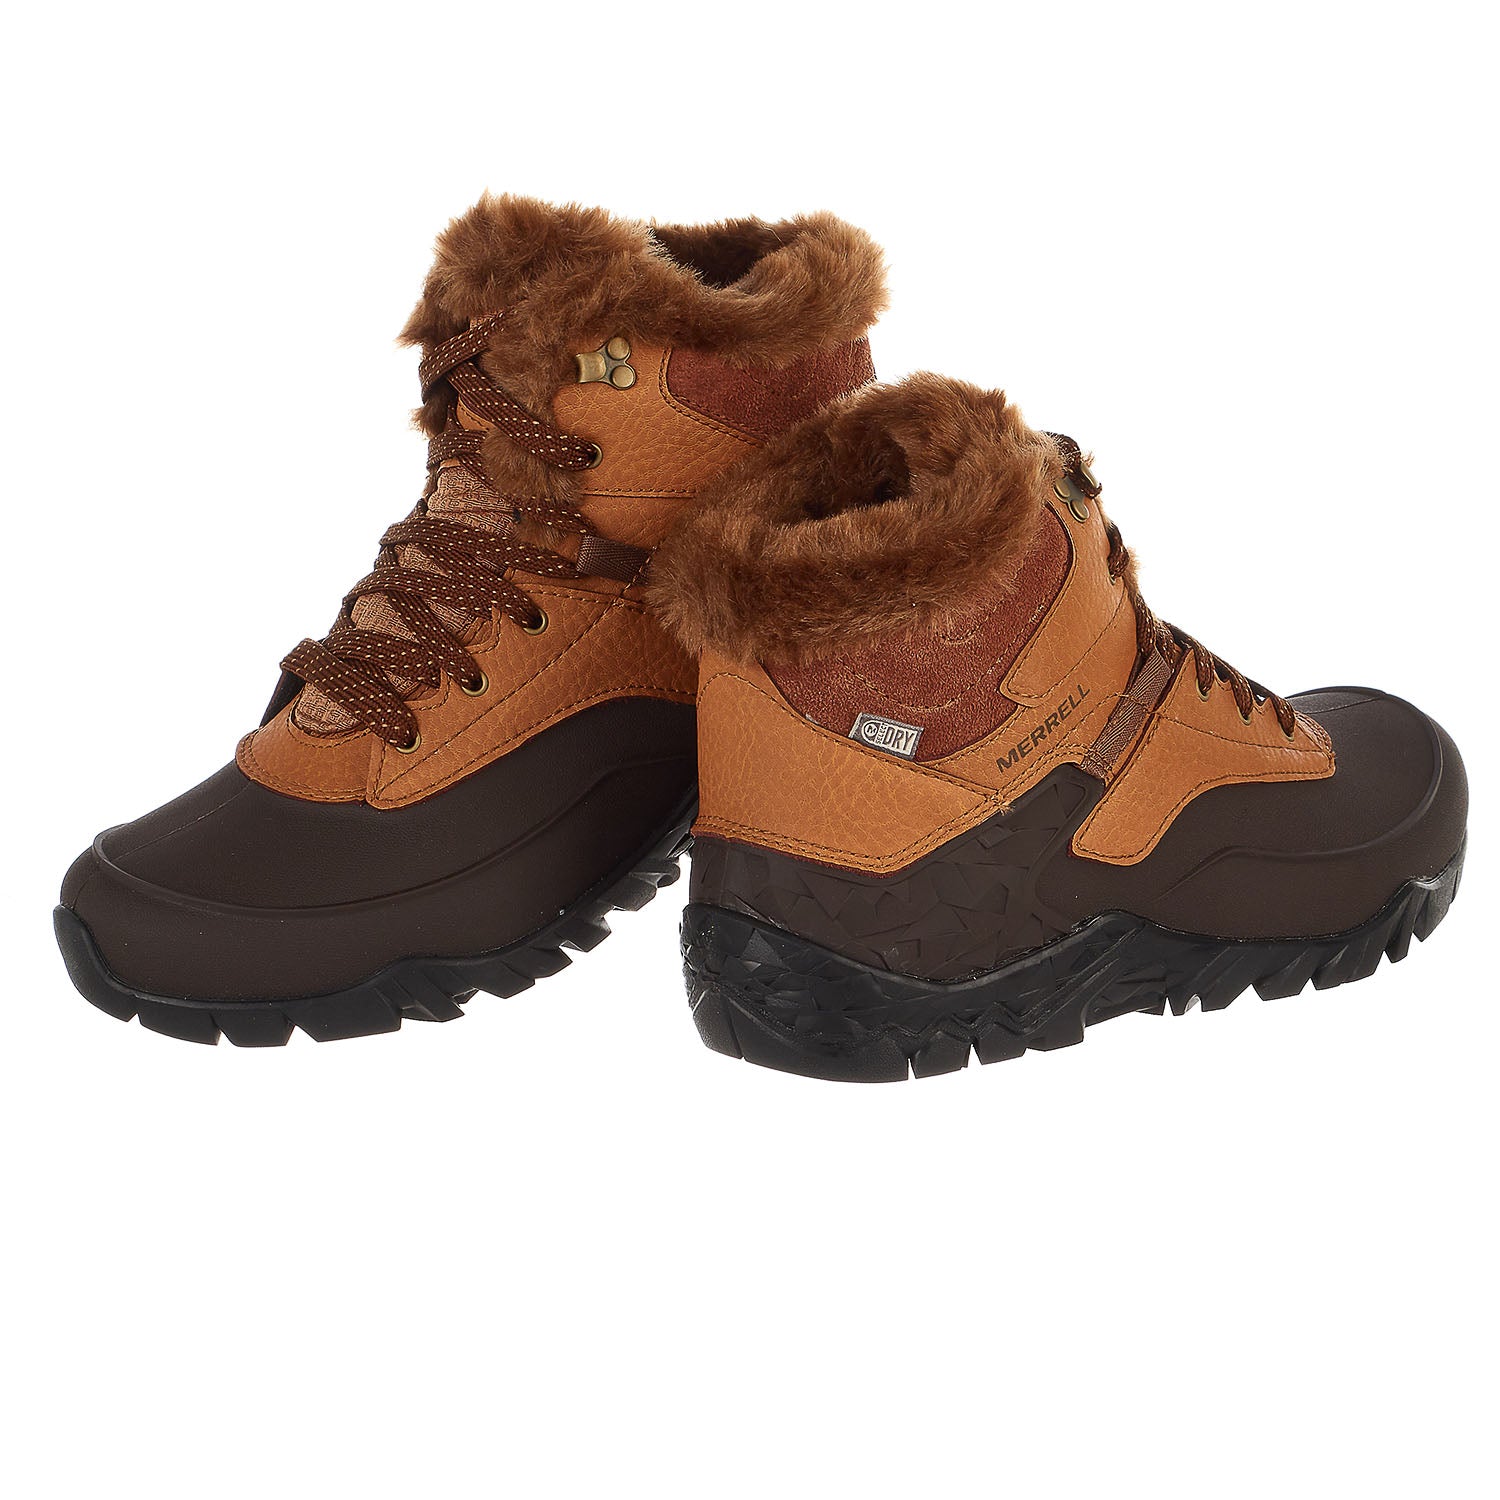 merrell waterproof snow boots